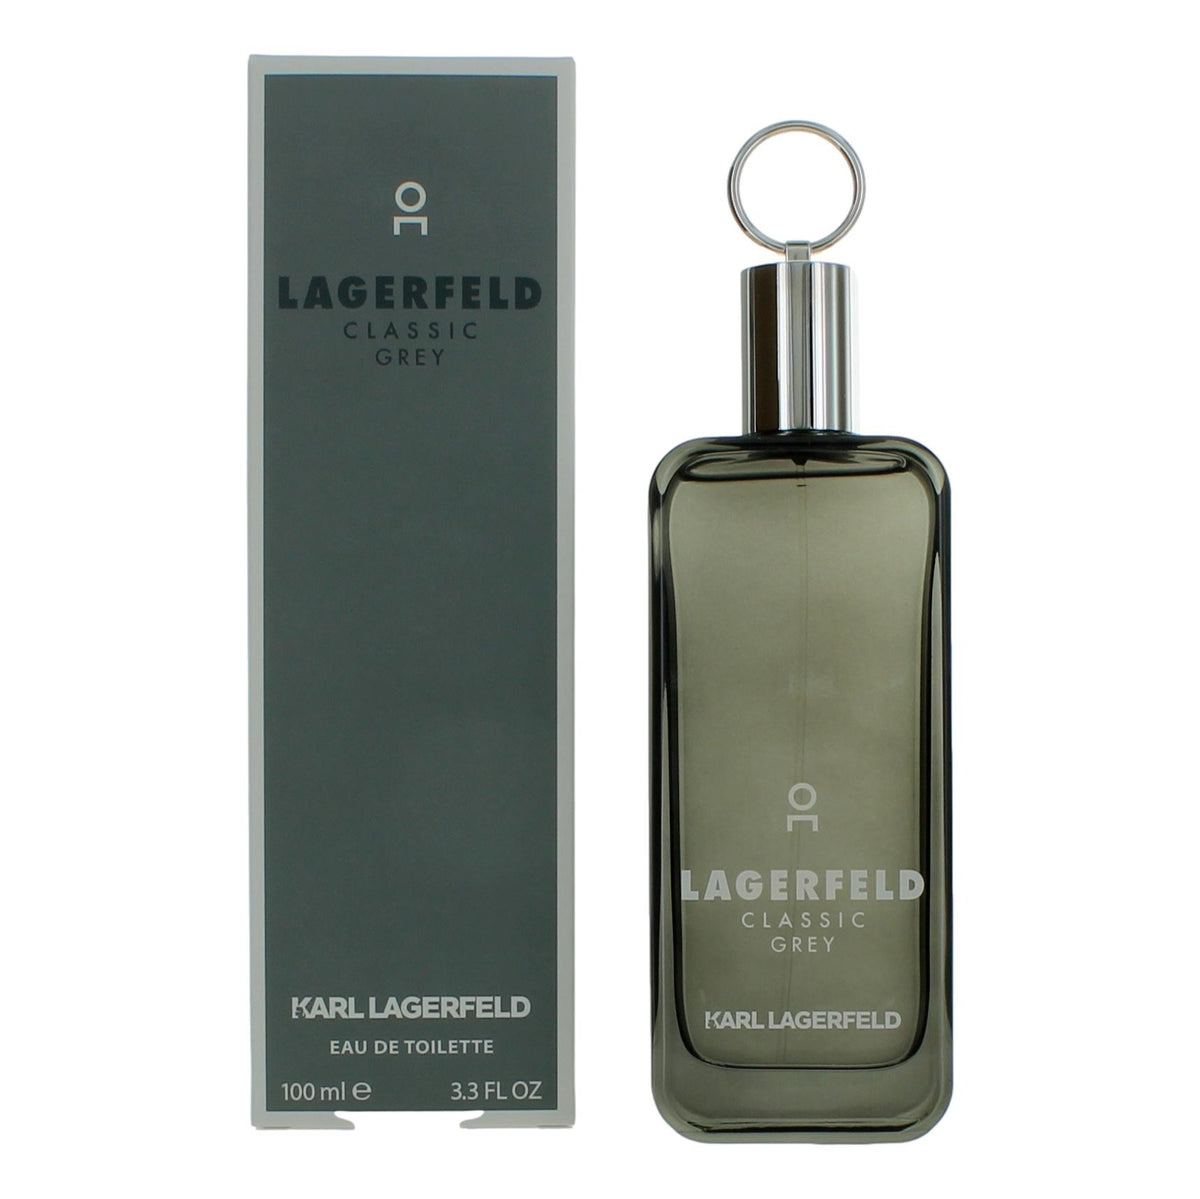 Lagerfeld Classic Grey by Karl Lagerfeld, 3.3 oz Eau De Toilette Spray for Men